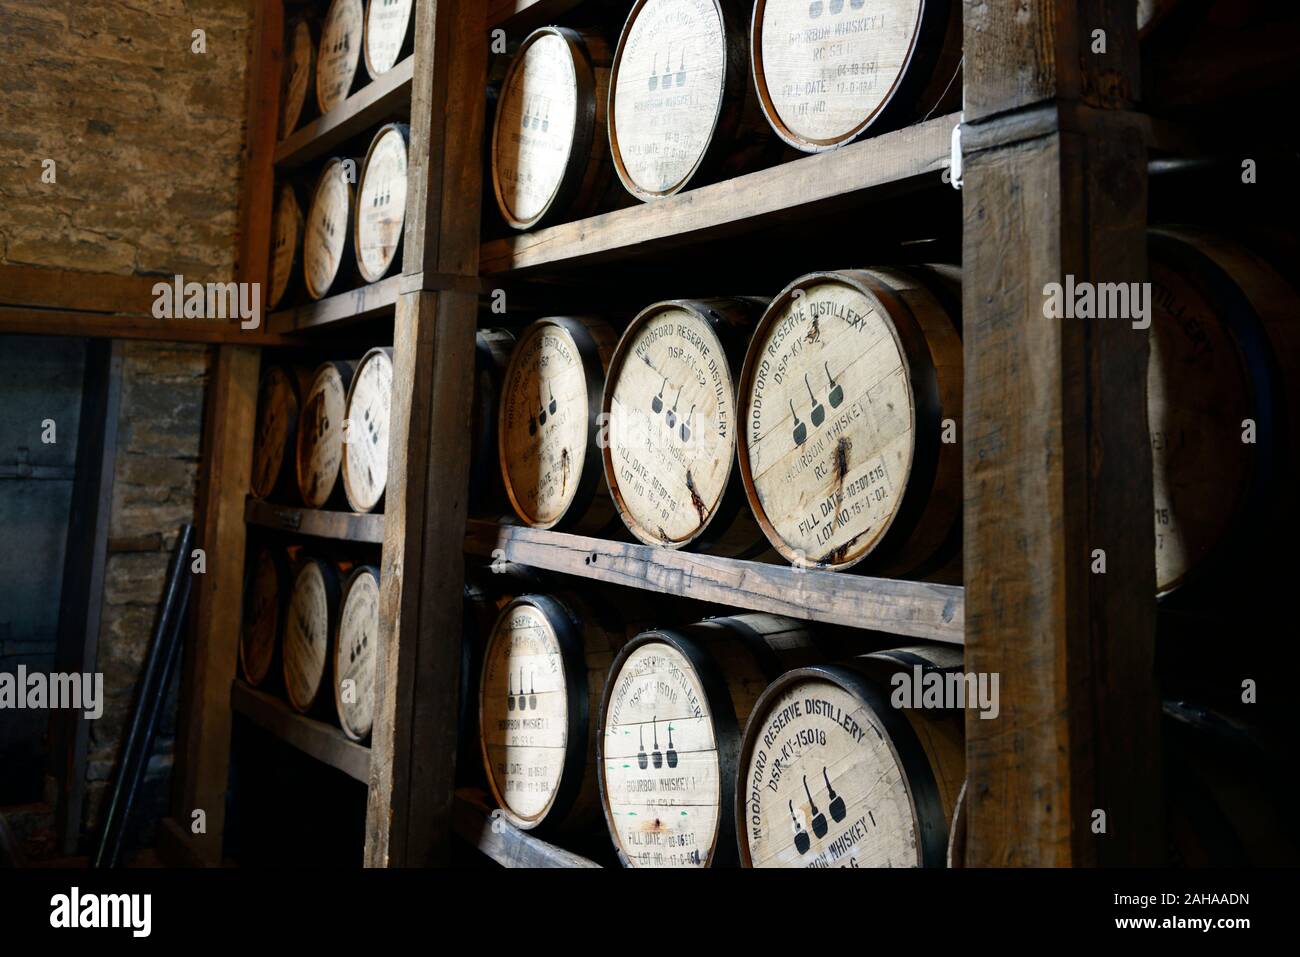 Barils empilés,canon,pile sur rack rack,mature,maturation,whisky,whisky bourbon,,production,Distillerie Woodford Reserve bourbon,,kentucky bourbon,bourbo Banque D'Images